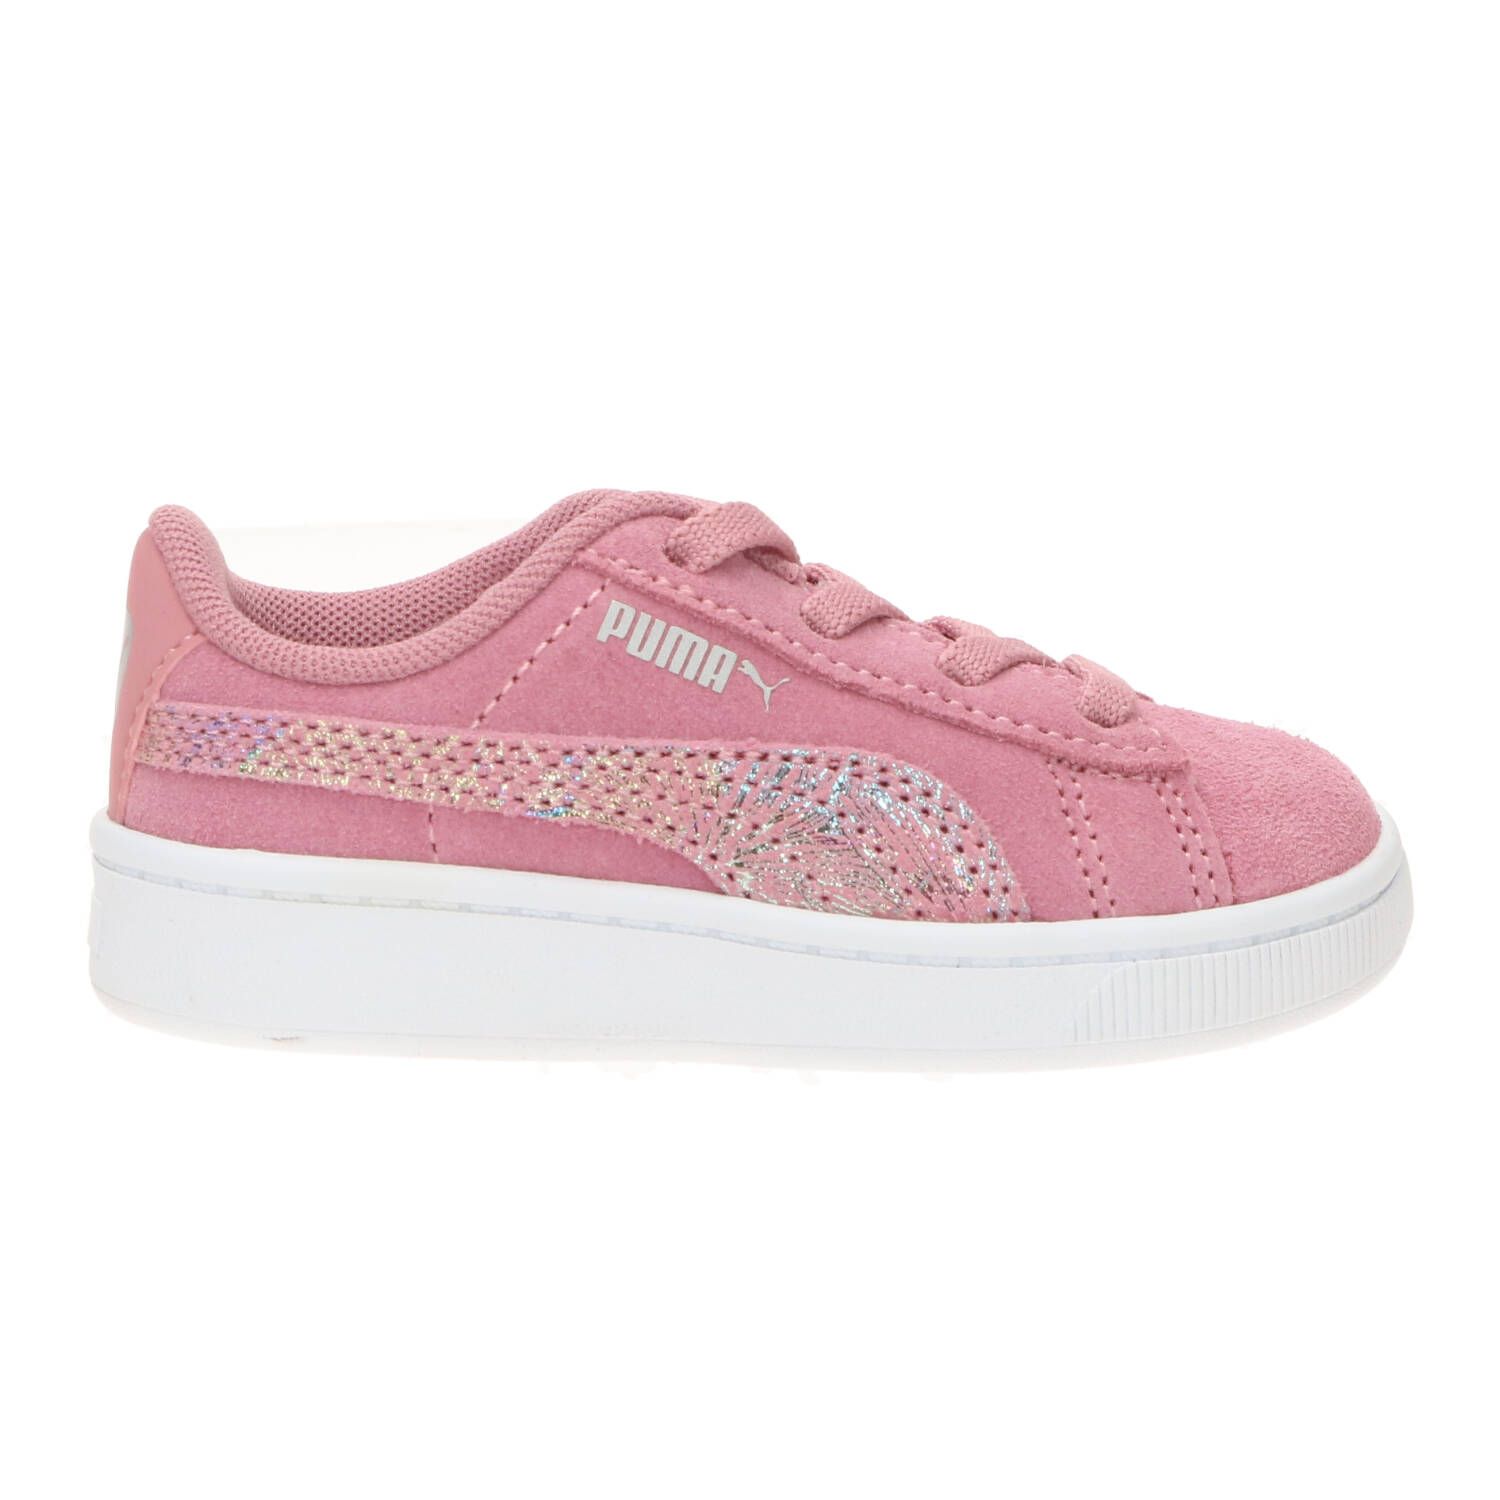 Puma Sneaker Meisjes Roze online kopen